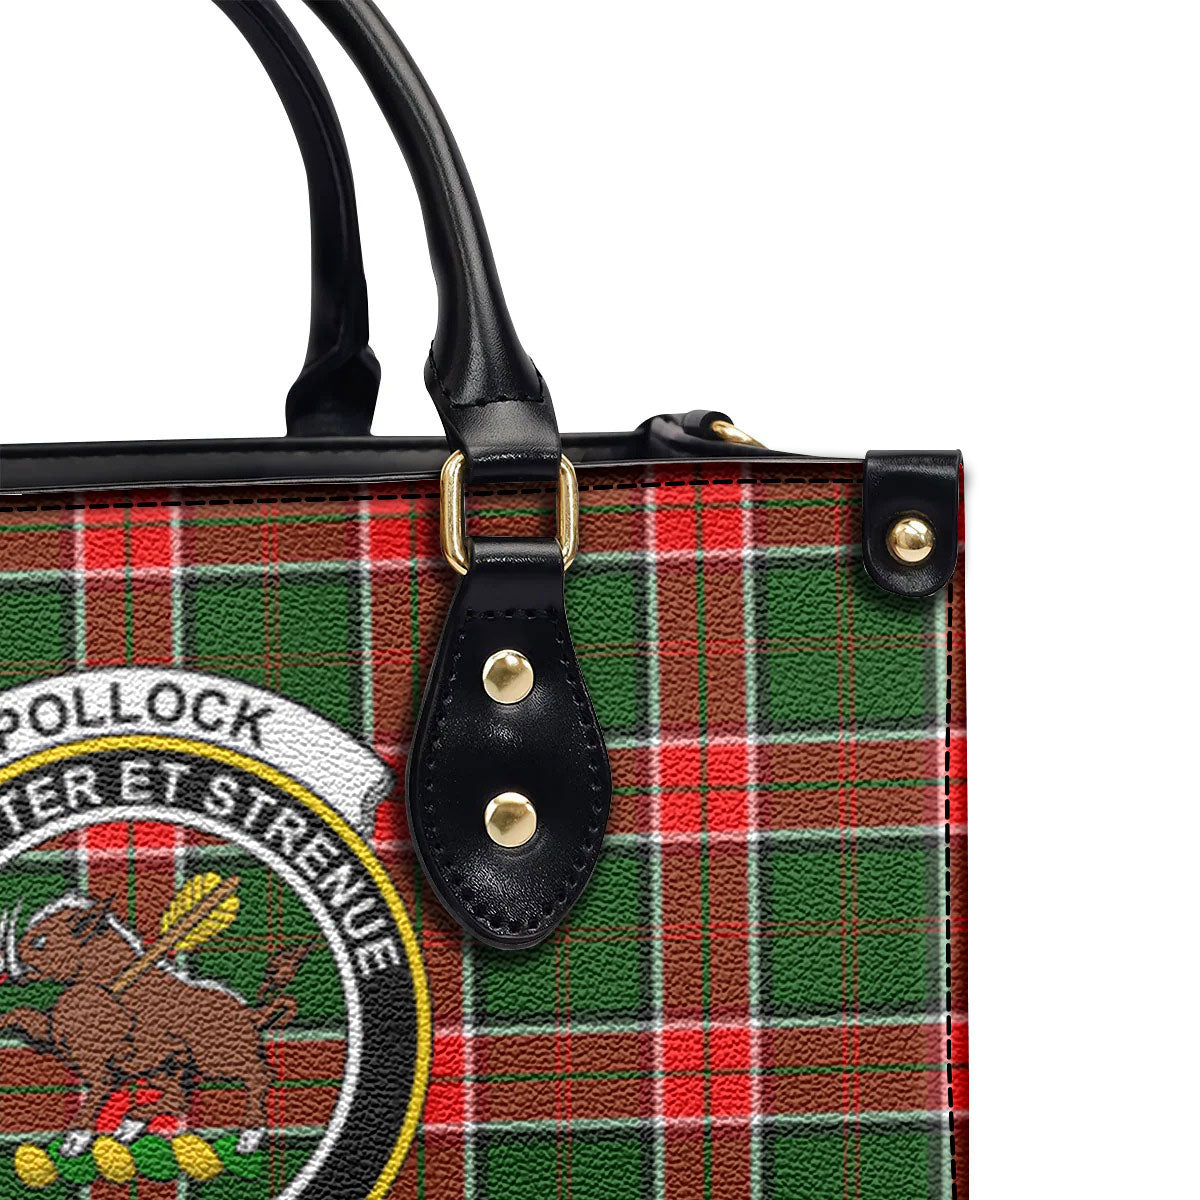 Pollock Tartan Crest Leather Handbag